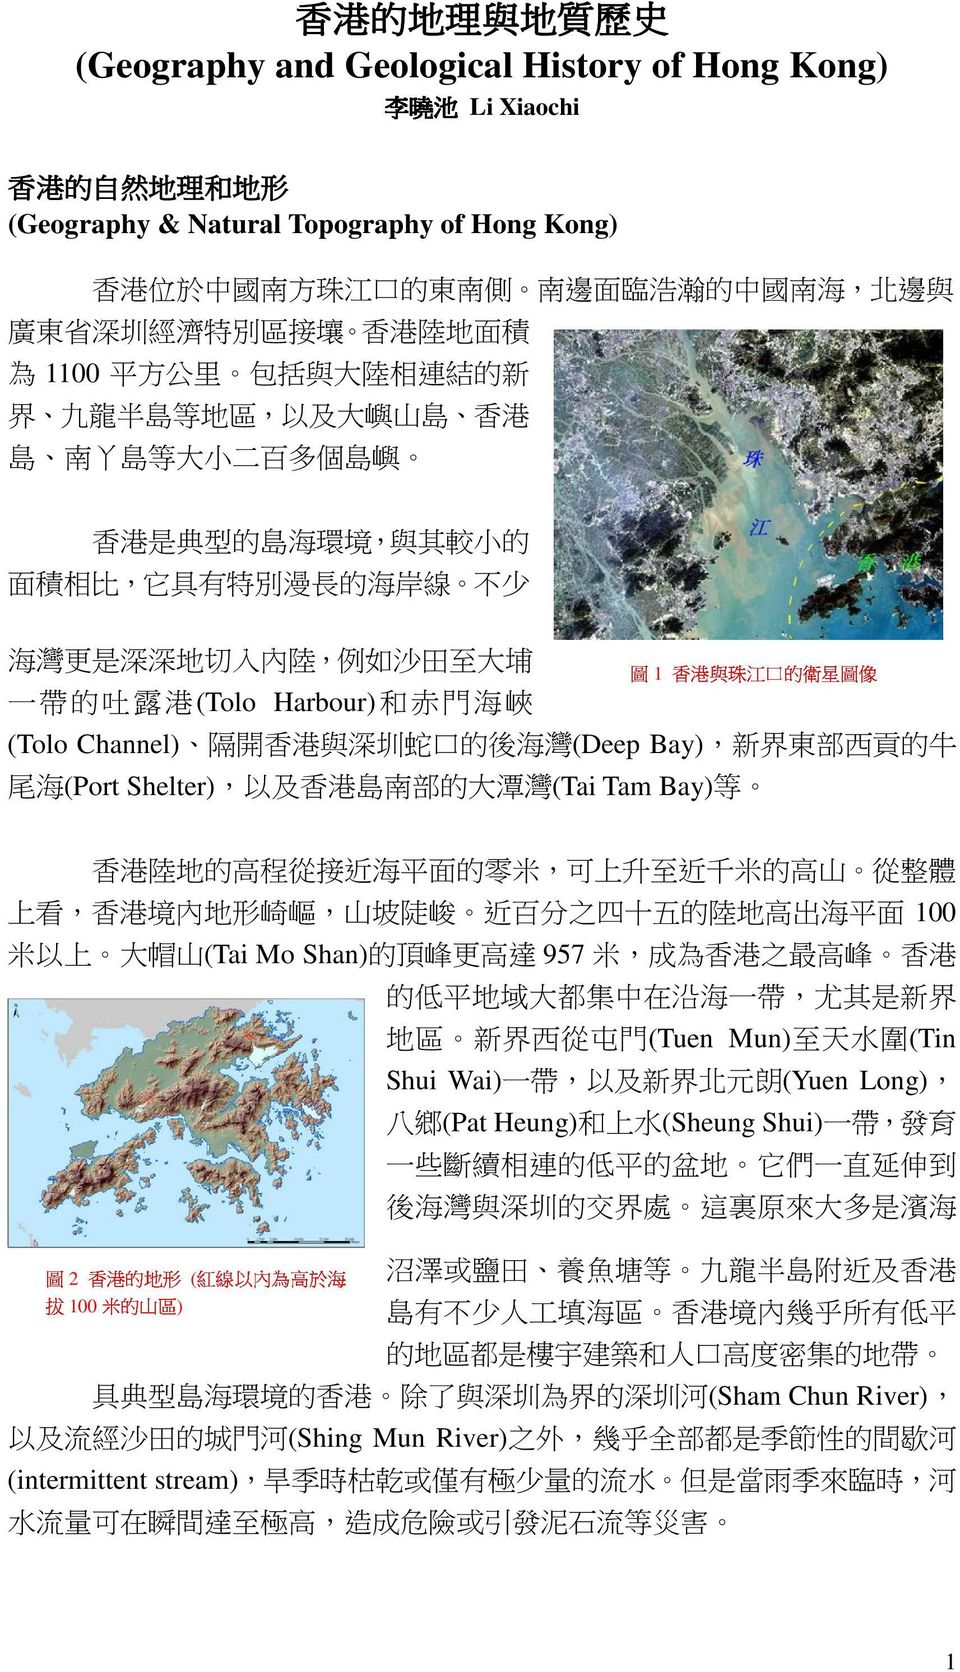 比, 它 具 有 特 別 漫 長 的 海 岸 線 不 少 海 灣 更 是 深 深 地 切 入 內 陸, 例 如 沙 田 至 大 埔 一 帶 的 吐 露 港 (Tolo Harbour) 和 赤 門 海 峽 區 形 紅 線 以 內 為 高 於 海 ( ) 圖 香 1 港 與 珠 江 口 的 衛 星 圖 像 (Tolo Channel) 隔 開 香 港 與 深 圳 蛇 口 的 後 海 灣 (Deep